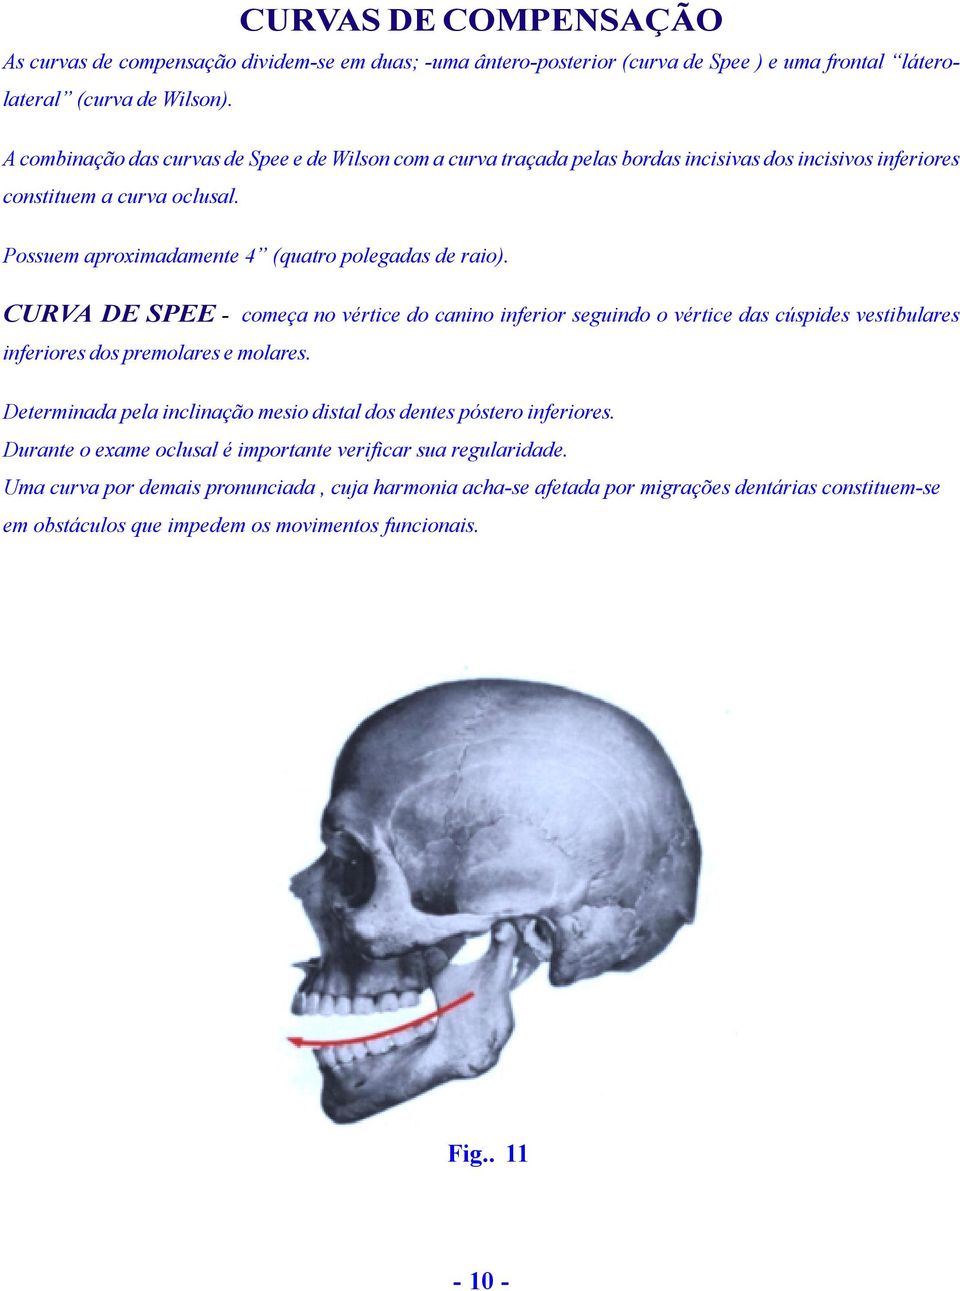 CURVA DE SPEE - começa no vértice do canino inferior seguindo o vértice das cúspides vestibulares inferiores dos premolares e molares.